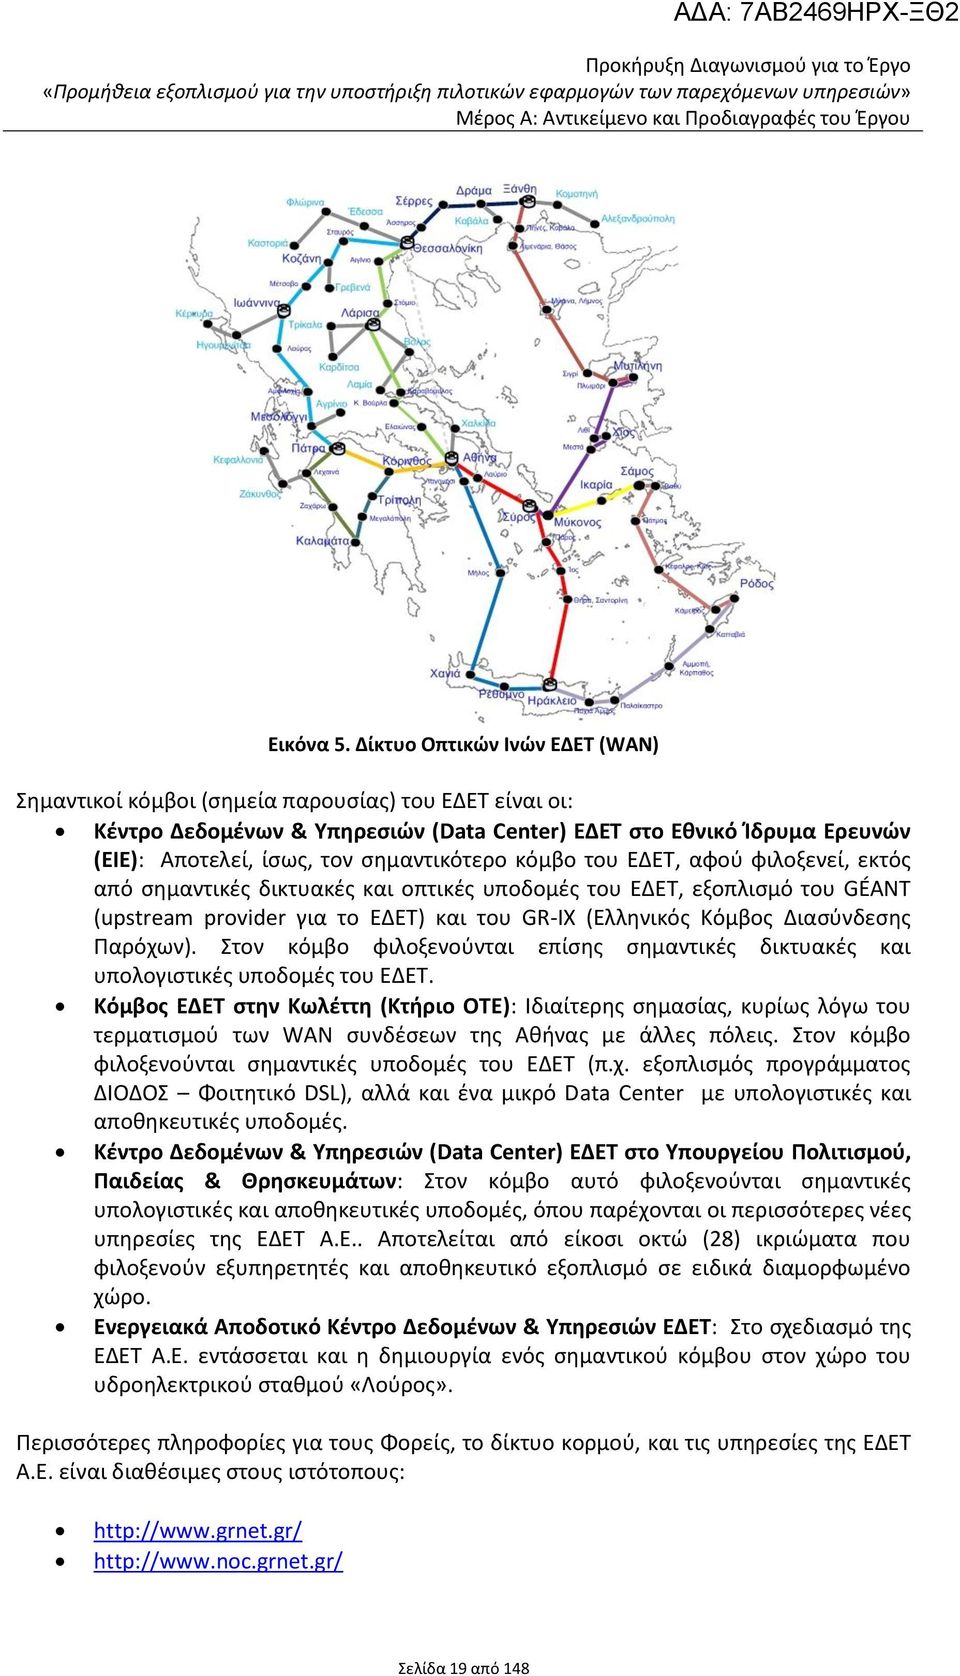 σημαντικότερο κόμβο του ΕΔΕΤ, αφού φιλοξενεί, εκτός από σημαντικές δικτυακές και οπτικές υποδομές του ΕΔΕΤ, εξοπλισμό του GÉANT (upstream provider για το ΕΔΕΤ) και του GR-IX (Ελληνικός Κόμβος